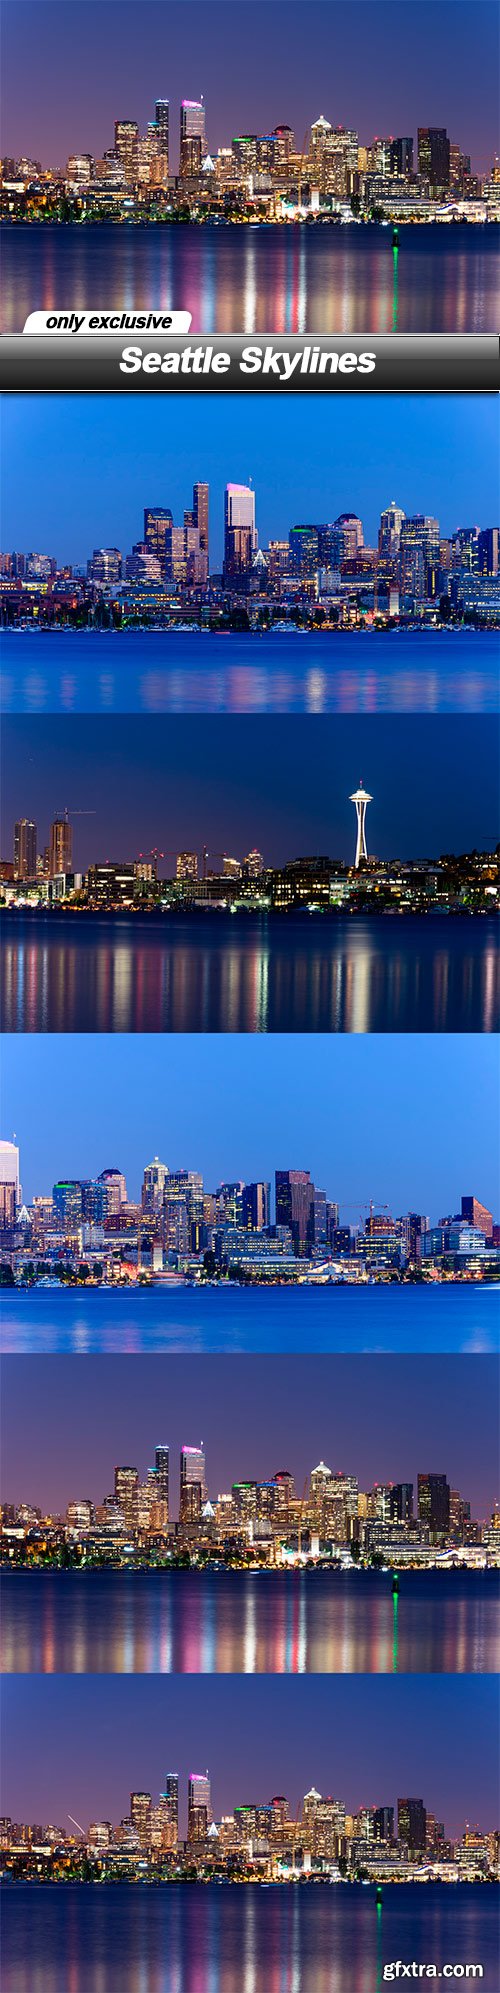 Seattle Skylines - 5 UHQ JPEG